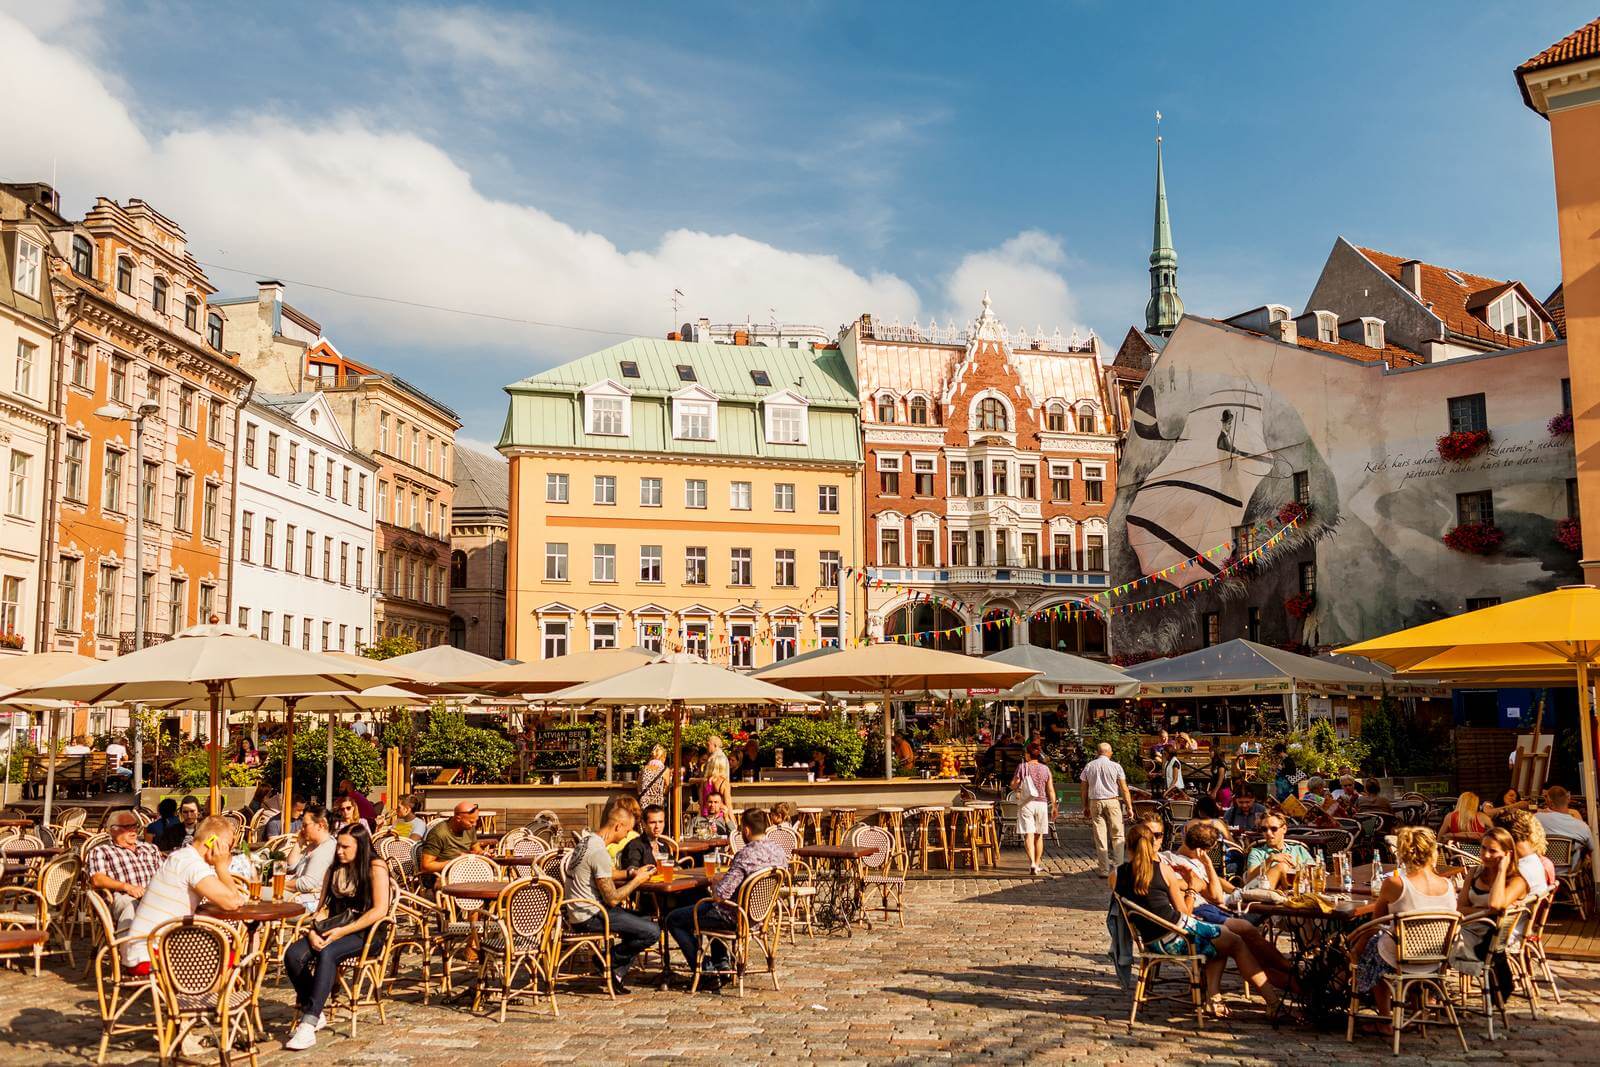 Foto: Domplatz mit Cafes in Riga - Bildrechte latvia.travel - Lupe Reisen